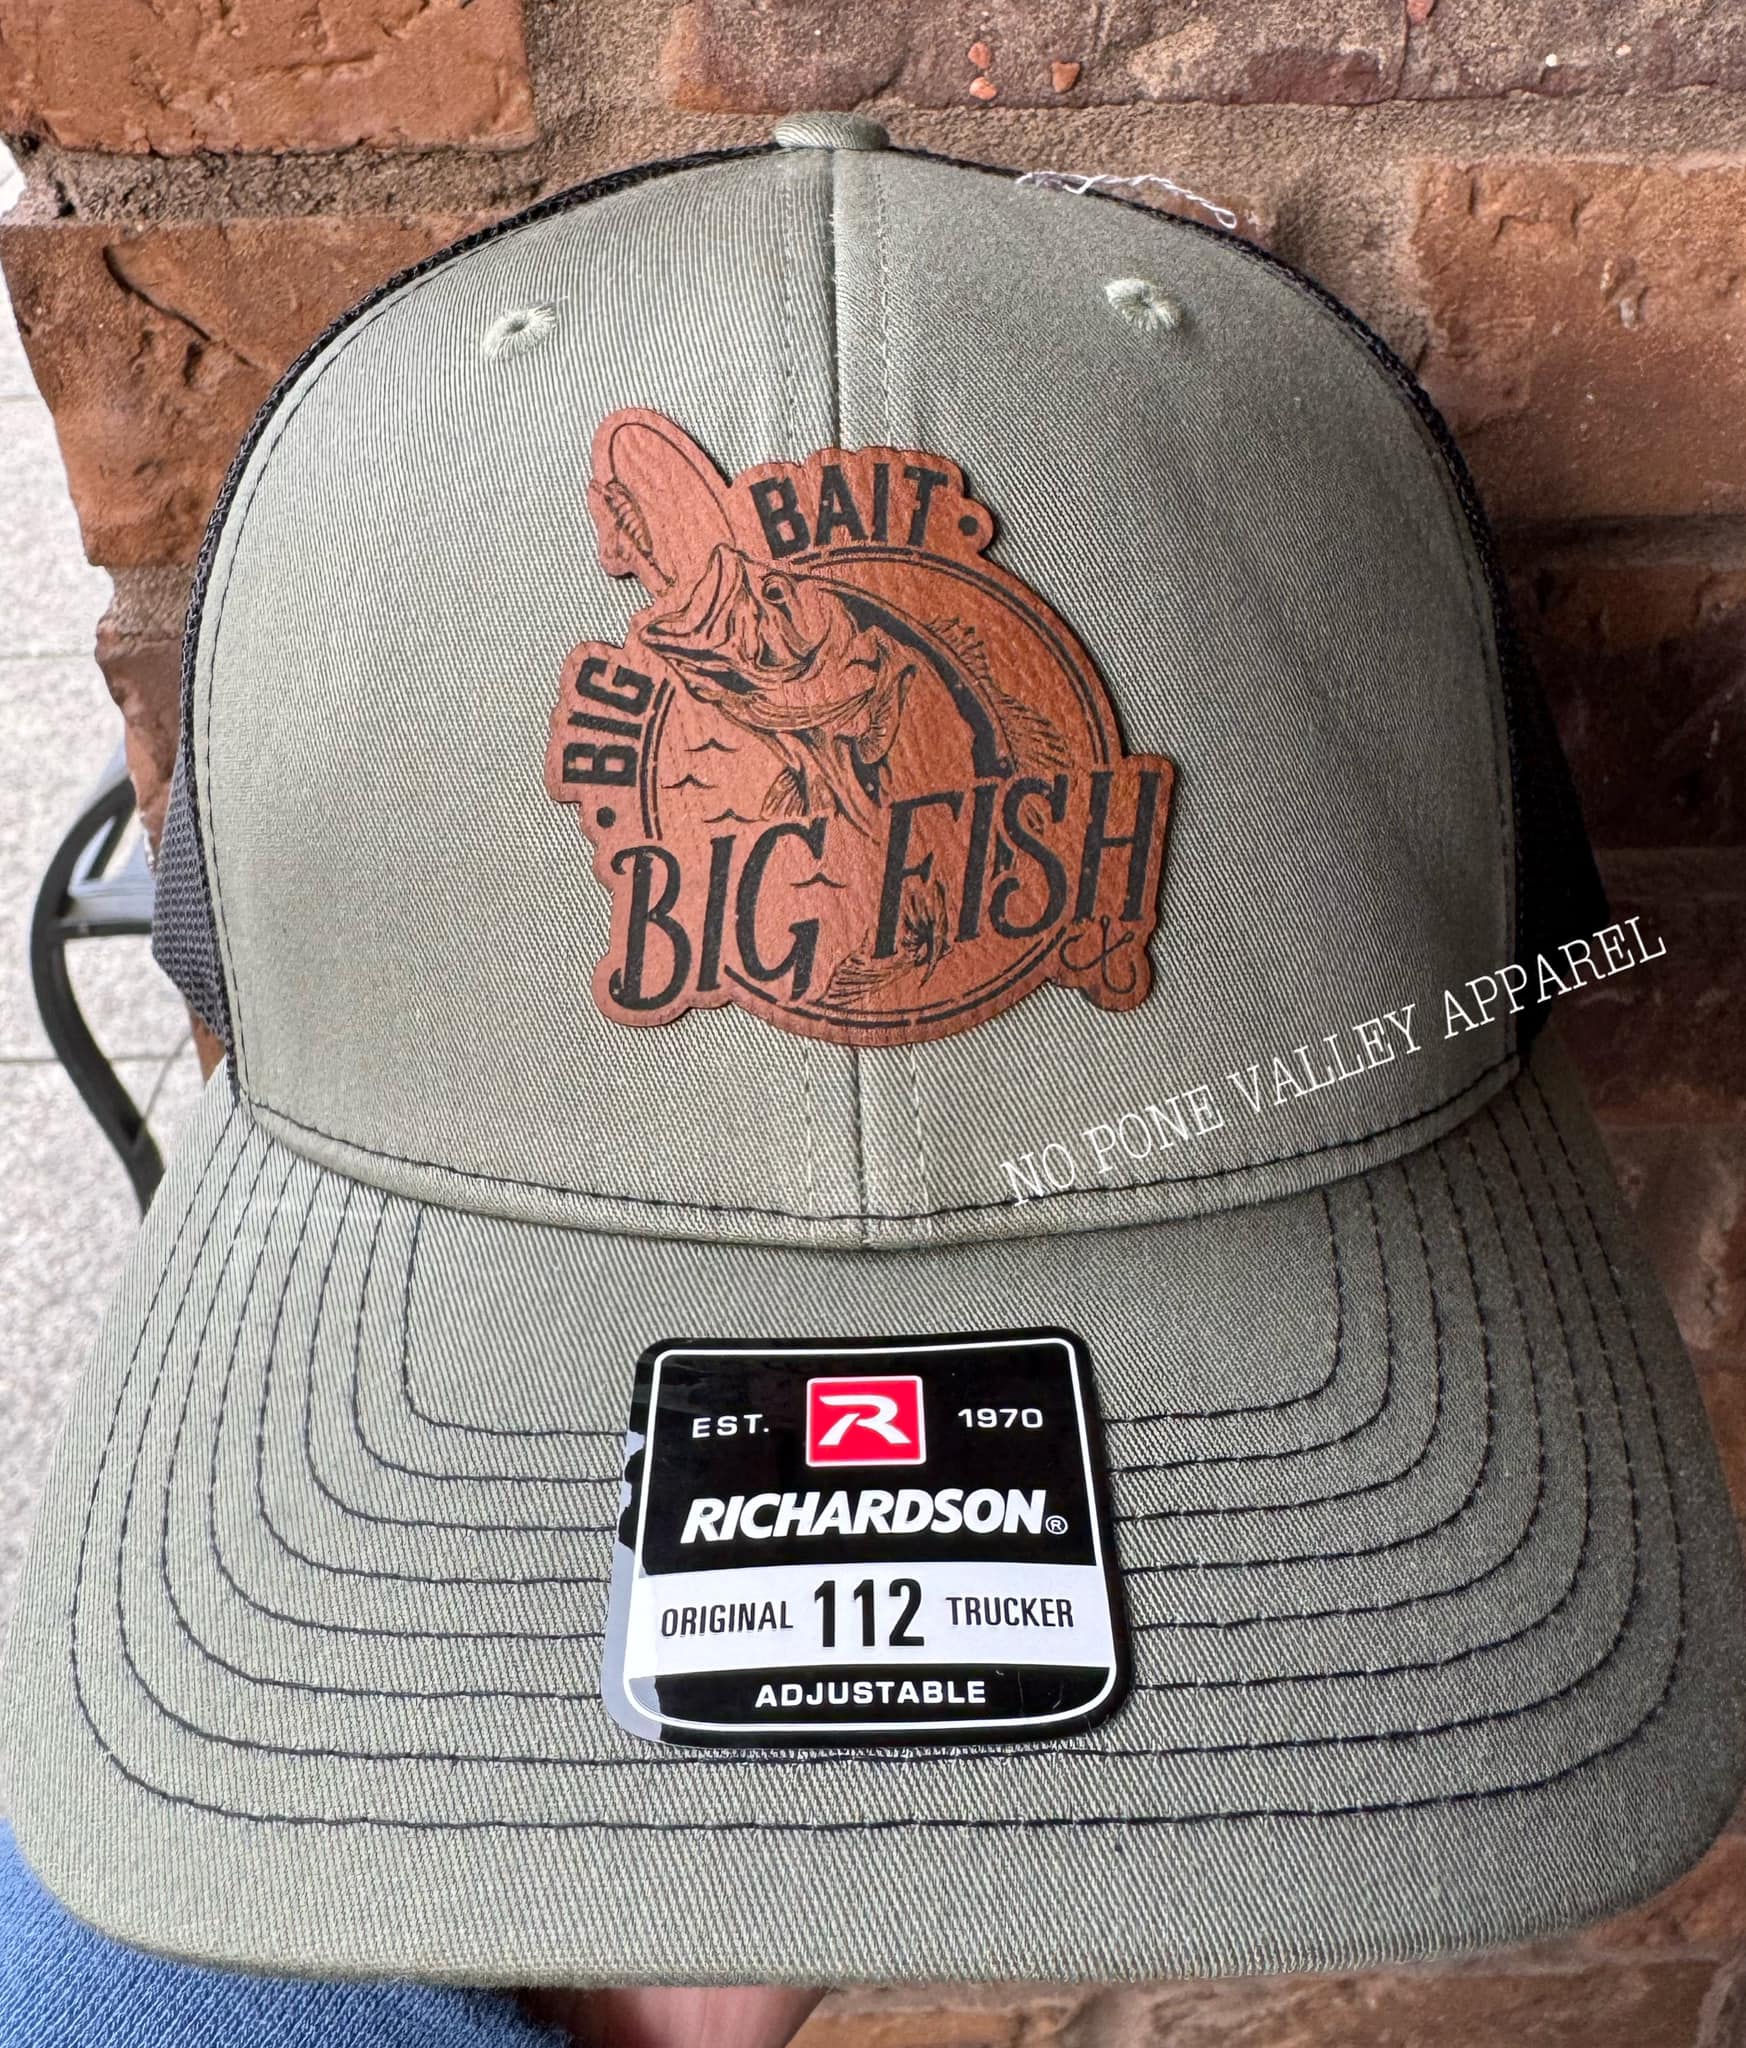 Big Bait Big Fish Hat – No Pone Valley Apparel